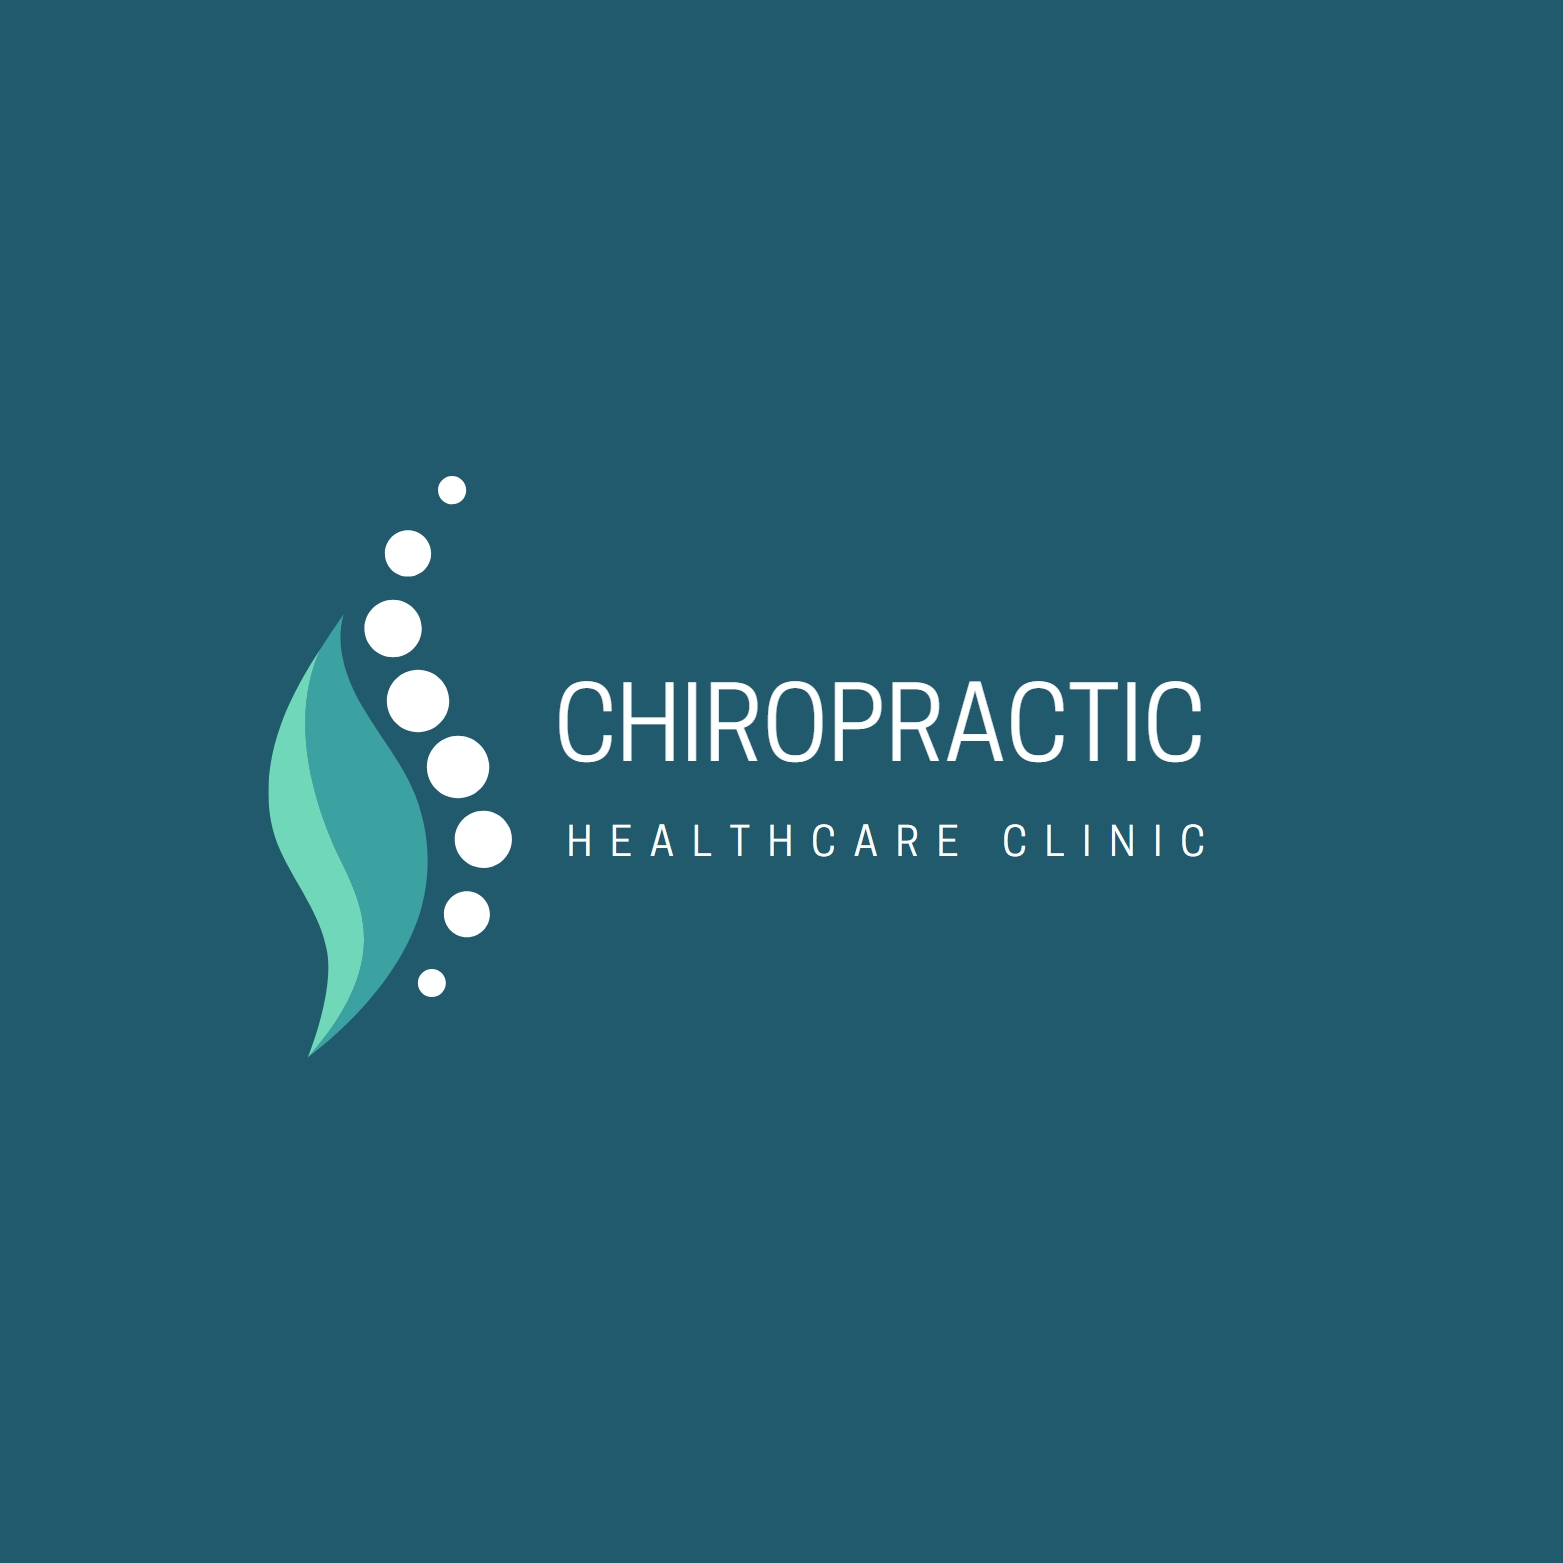 Chiropractic-Healthcare-Clinic-Logo-webvizion